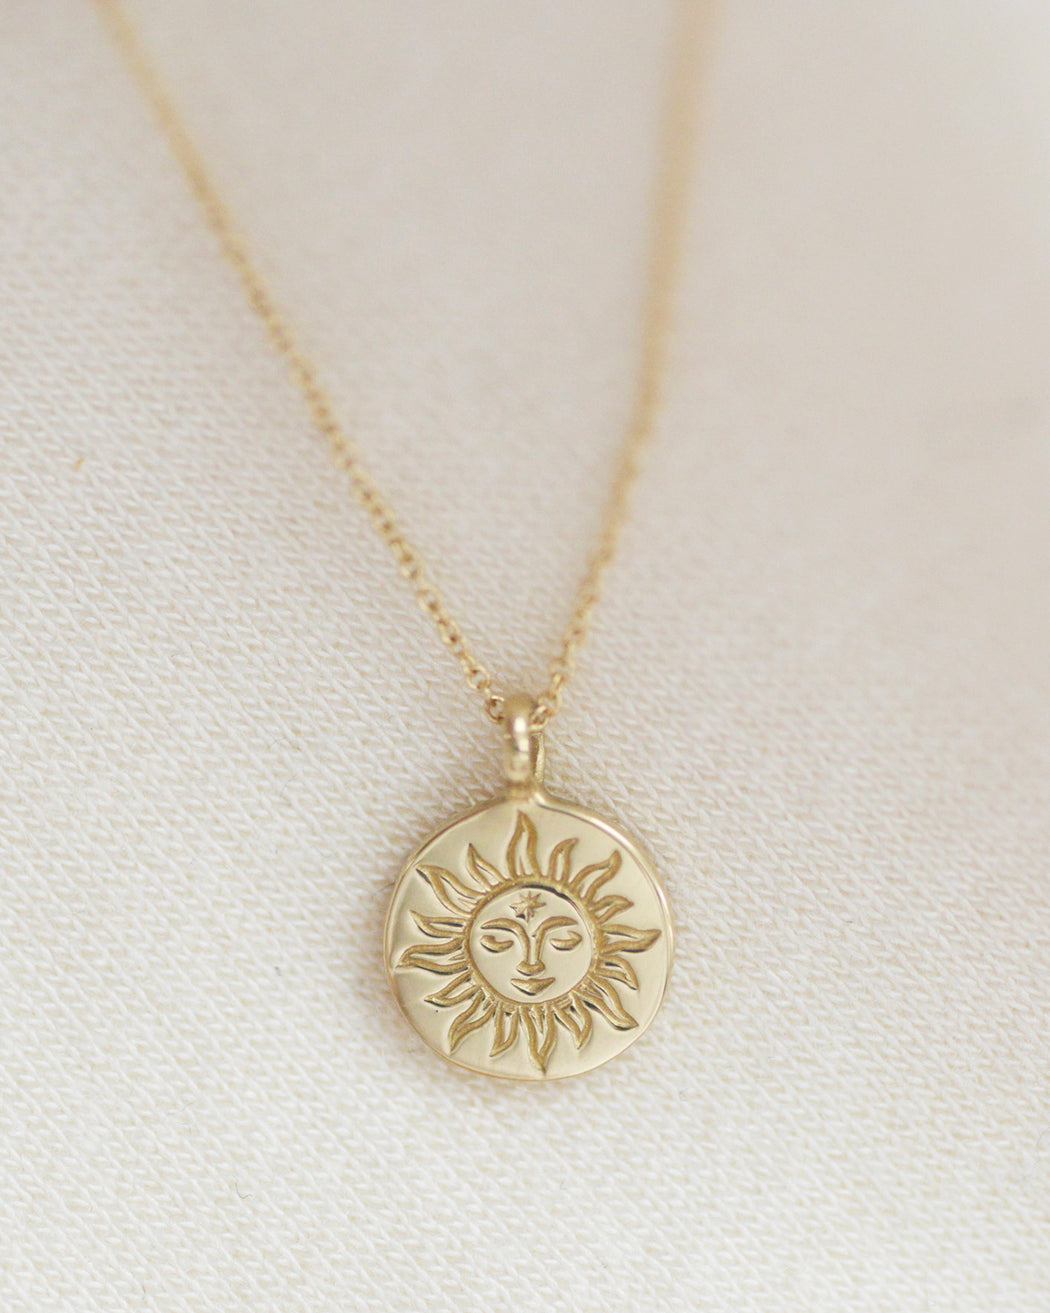 CLAUS:Sun Pendant Necklace,ANOMIE